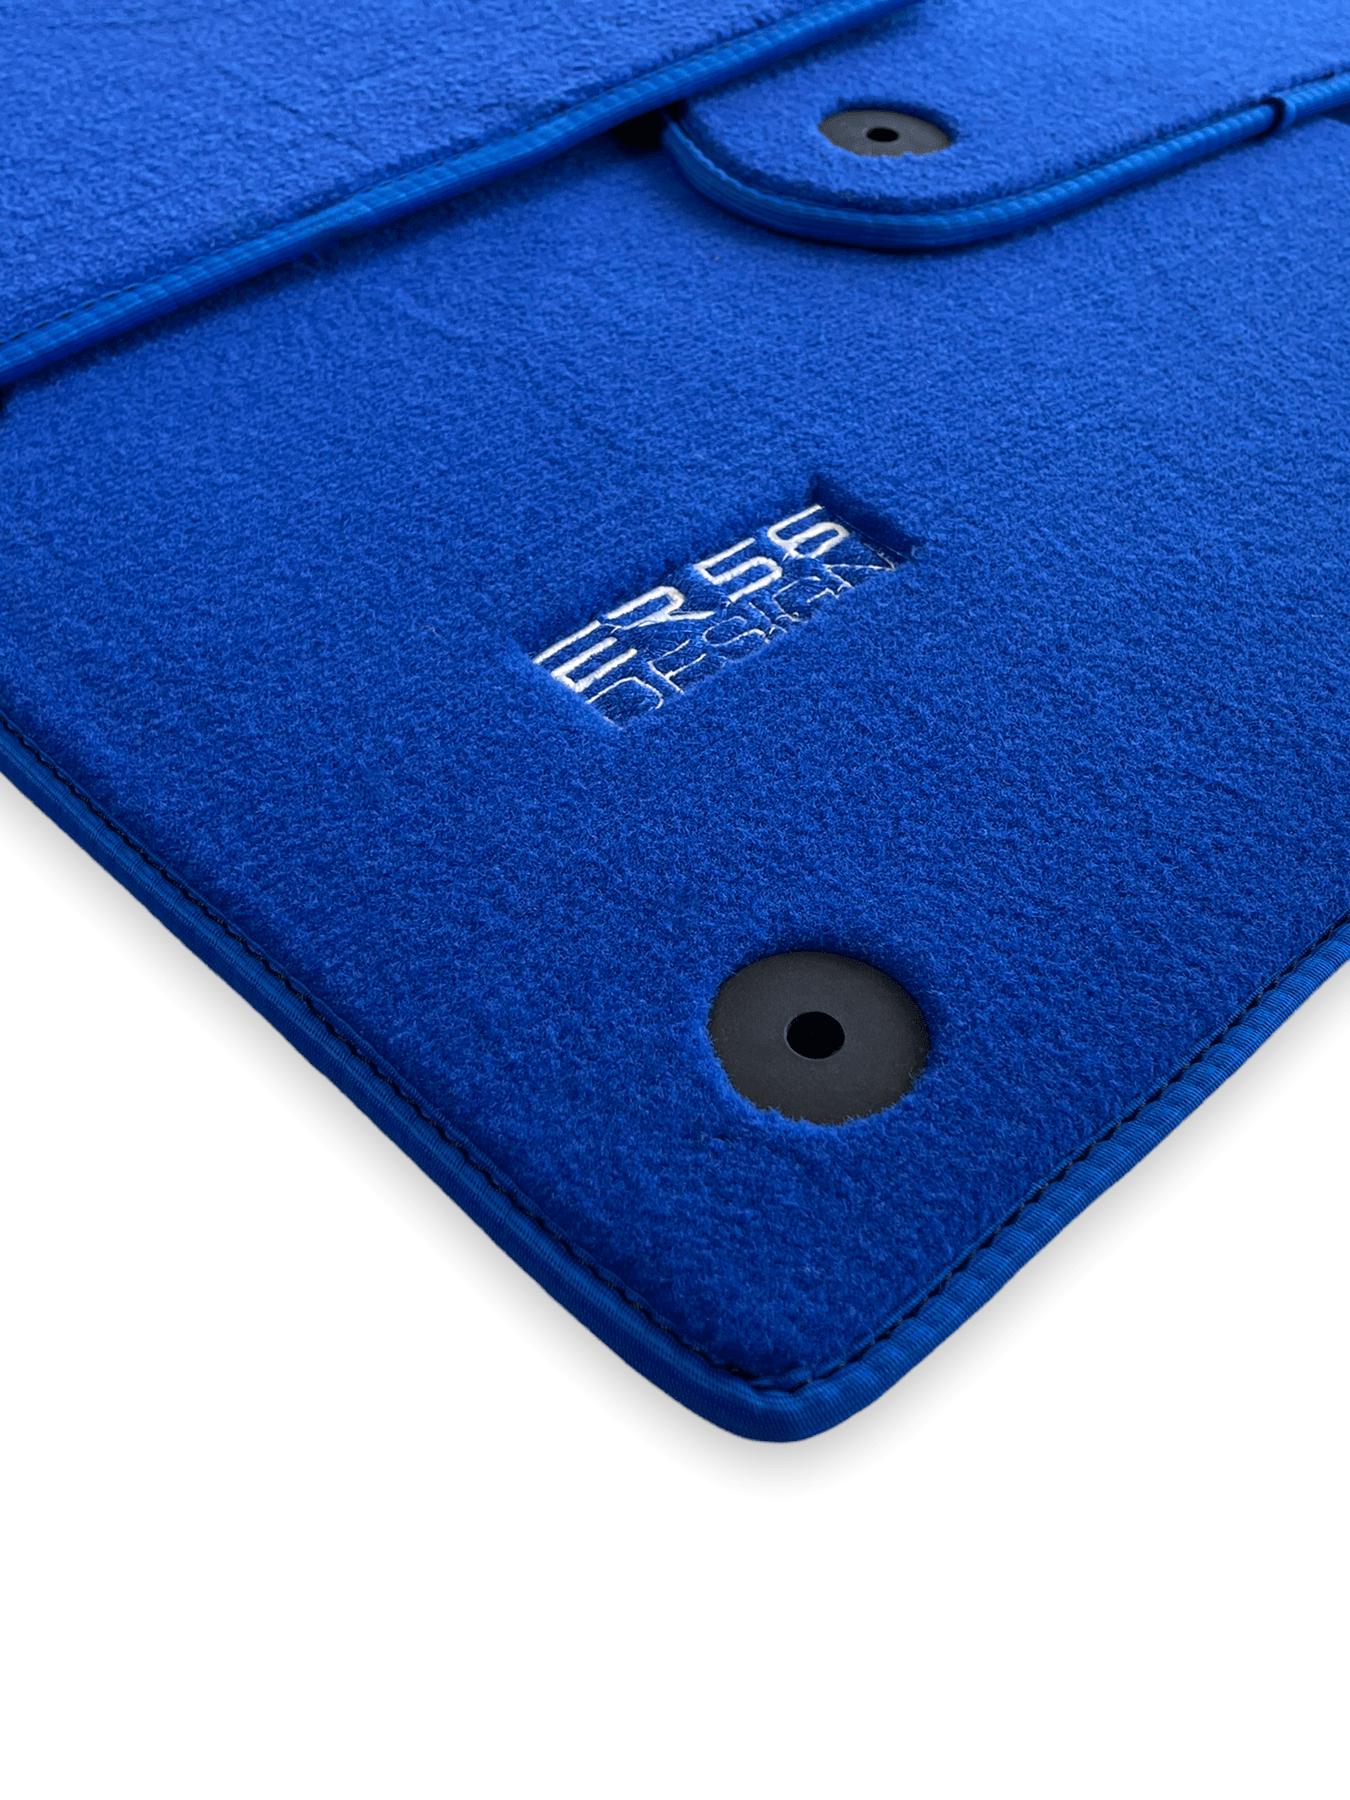 Blue Floor Mats for Audi A5 - F5A Sportback (2017-2020) | ER56 Design